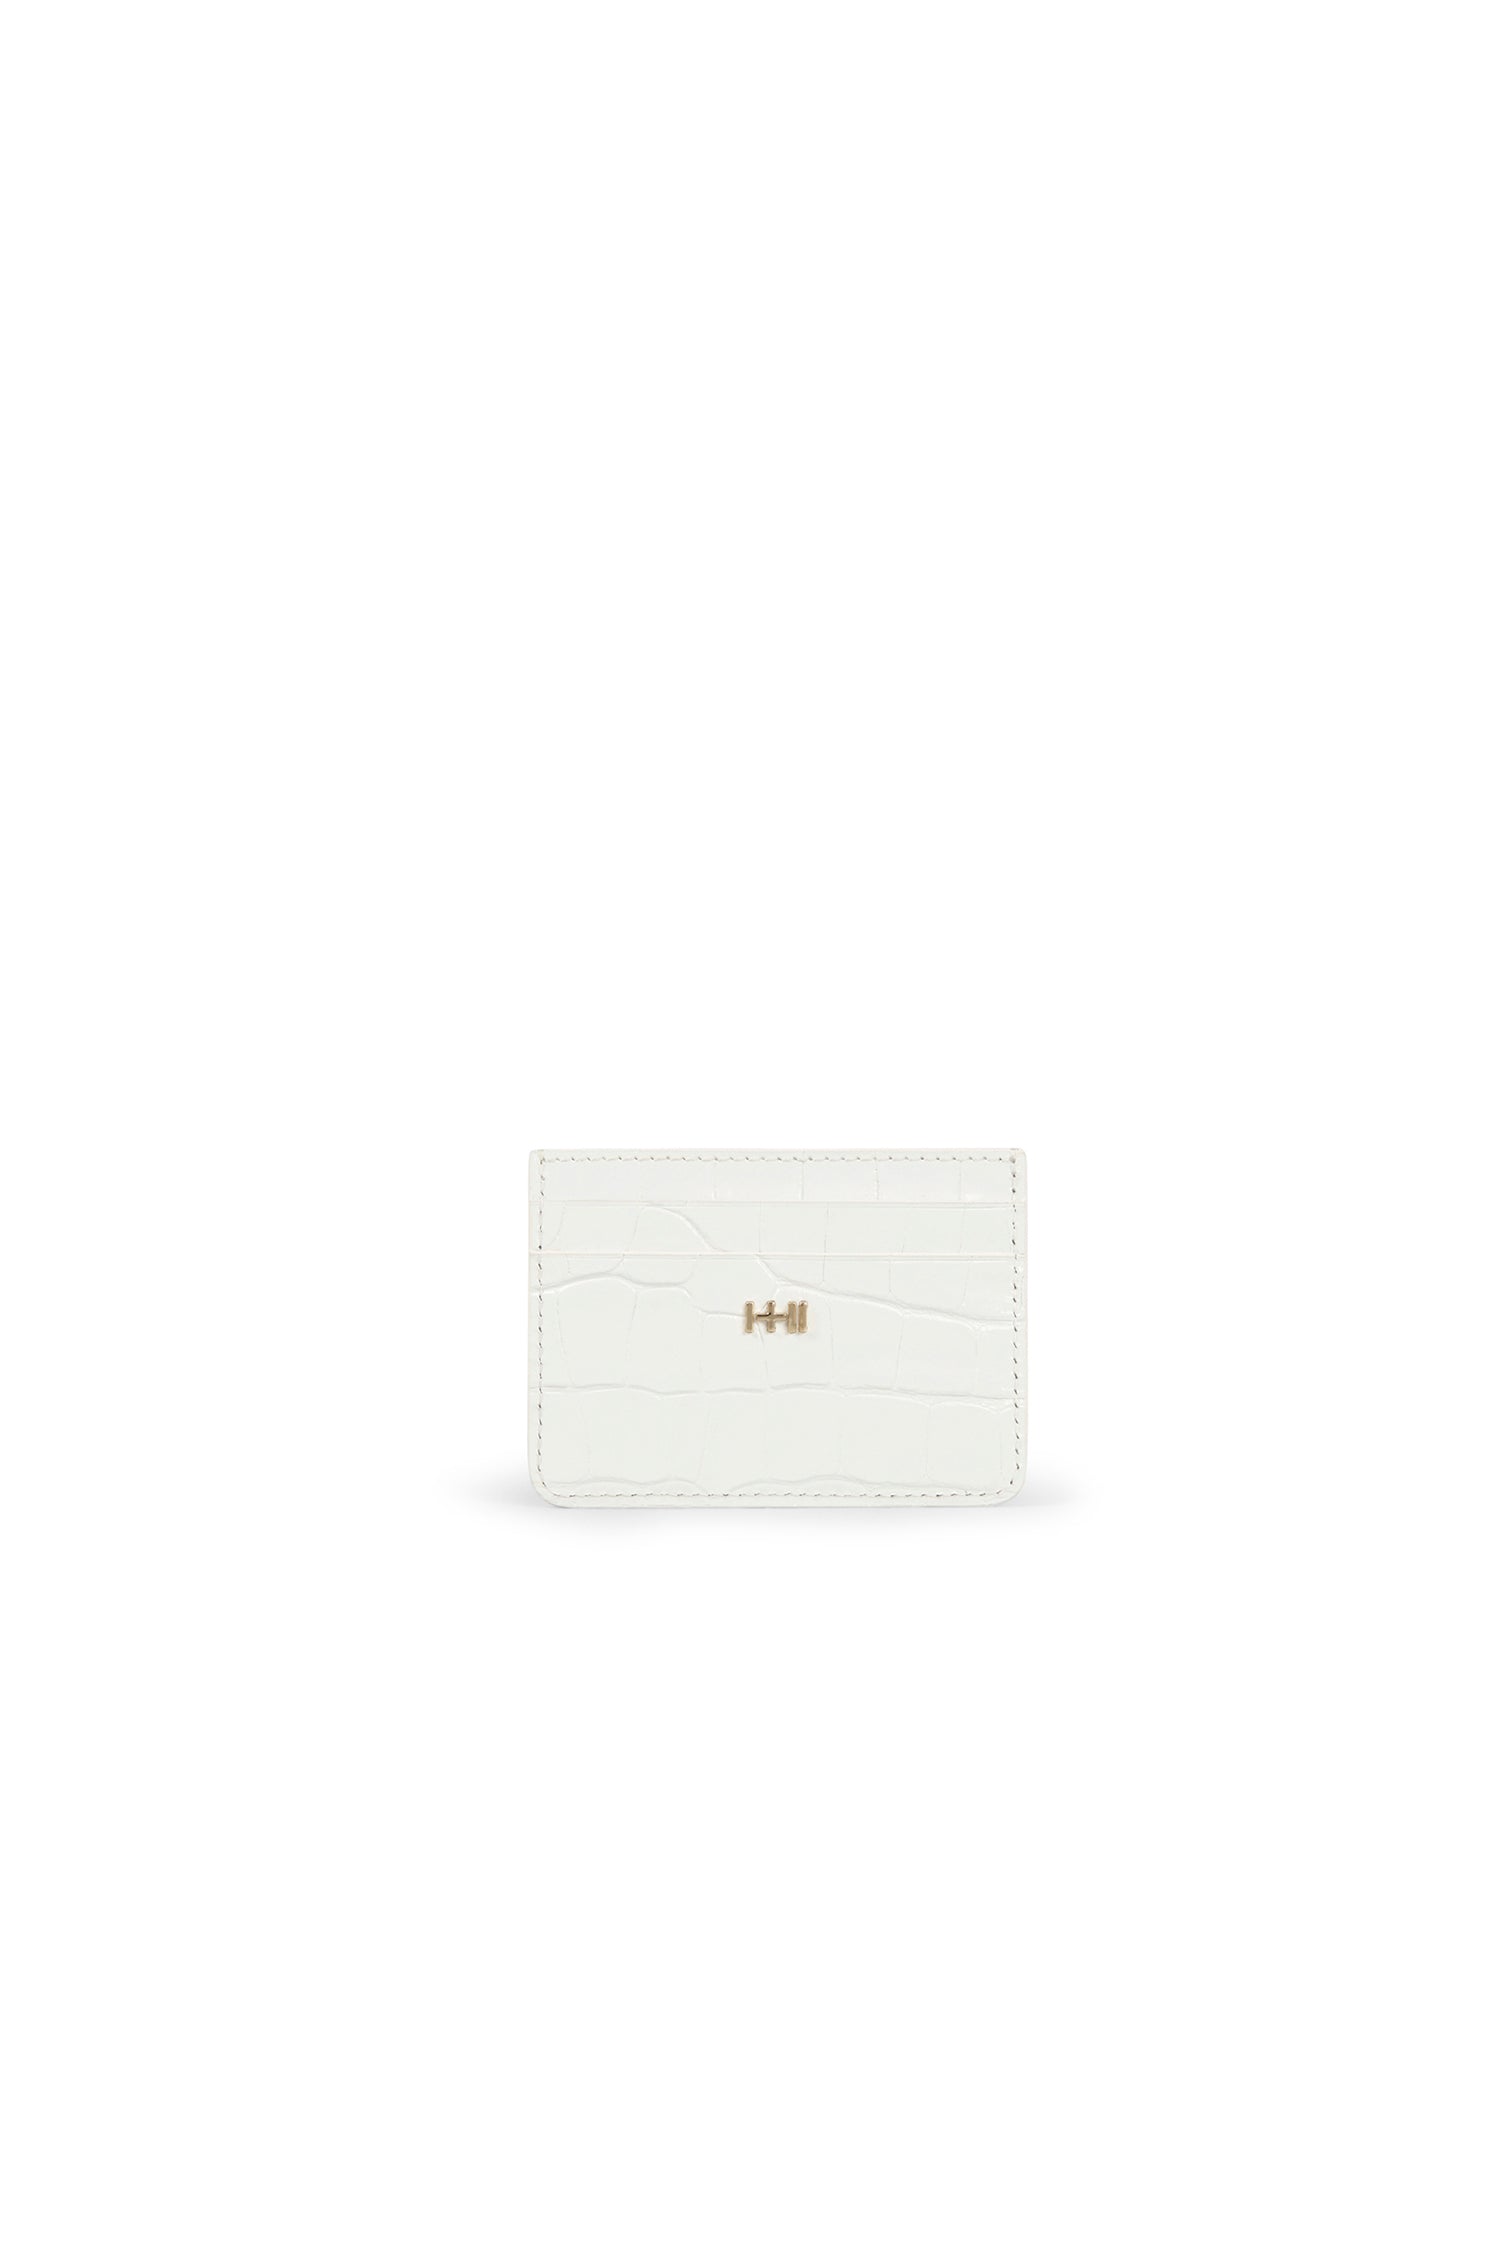 SAMPLE - The Heroine Card Holder White